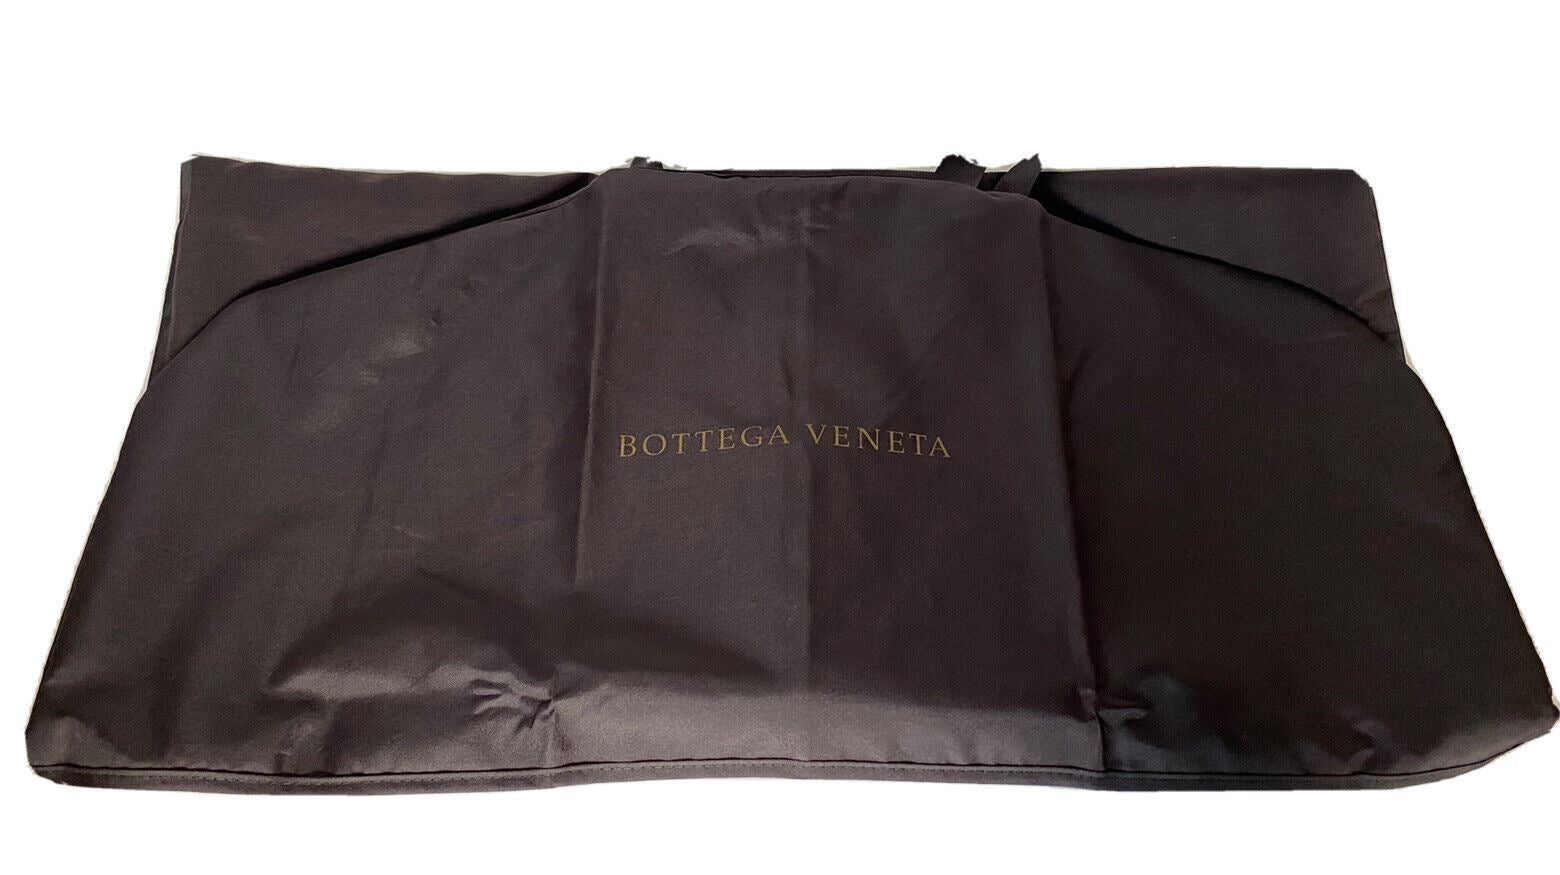 Neuer Bottega Veneta Mantel/Suite/Kleider-Kleidersack, Braun, 54,5" L x 27" B 